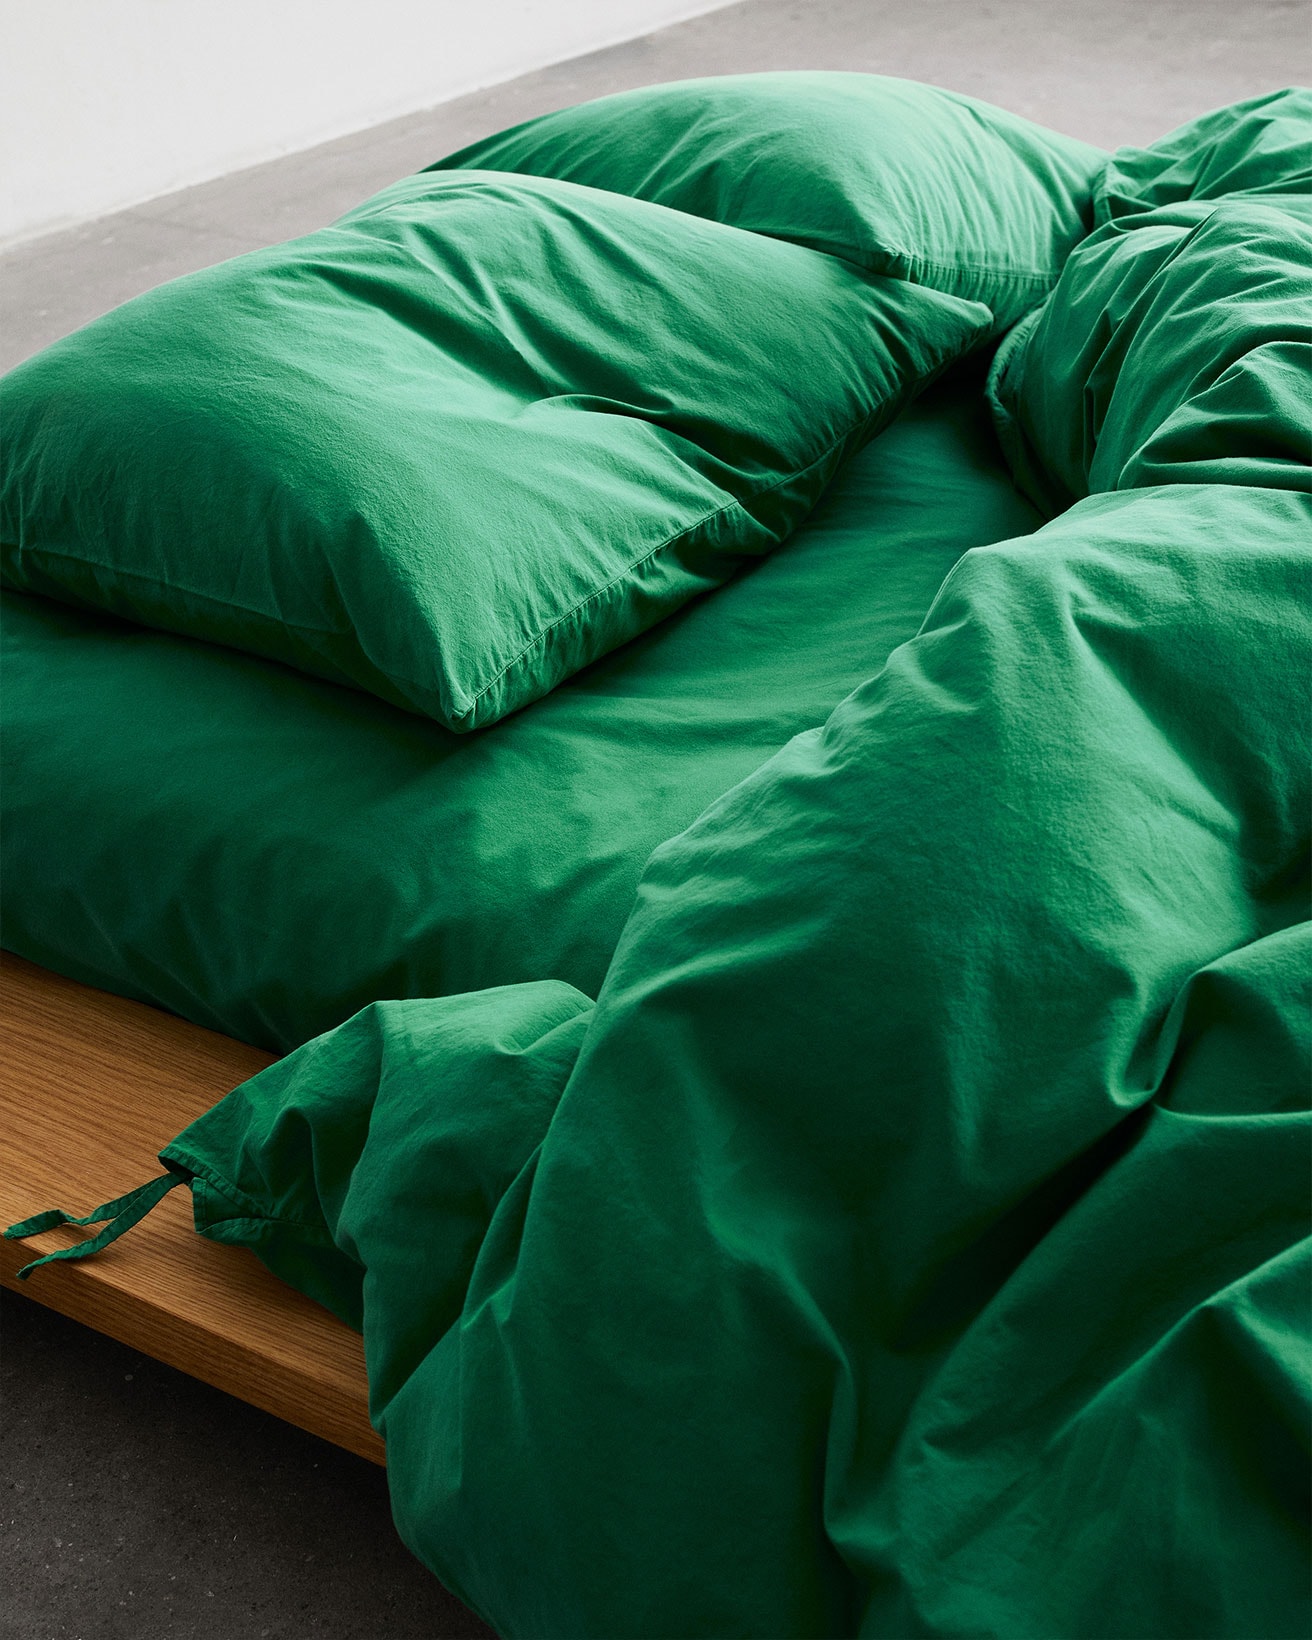 Tekla Conifer Green Bedding Blanket Duvet Pillow Cover